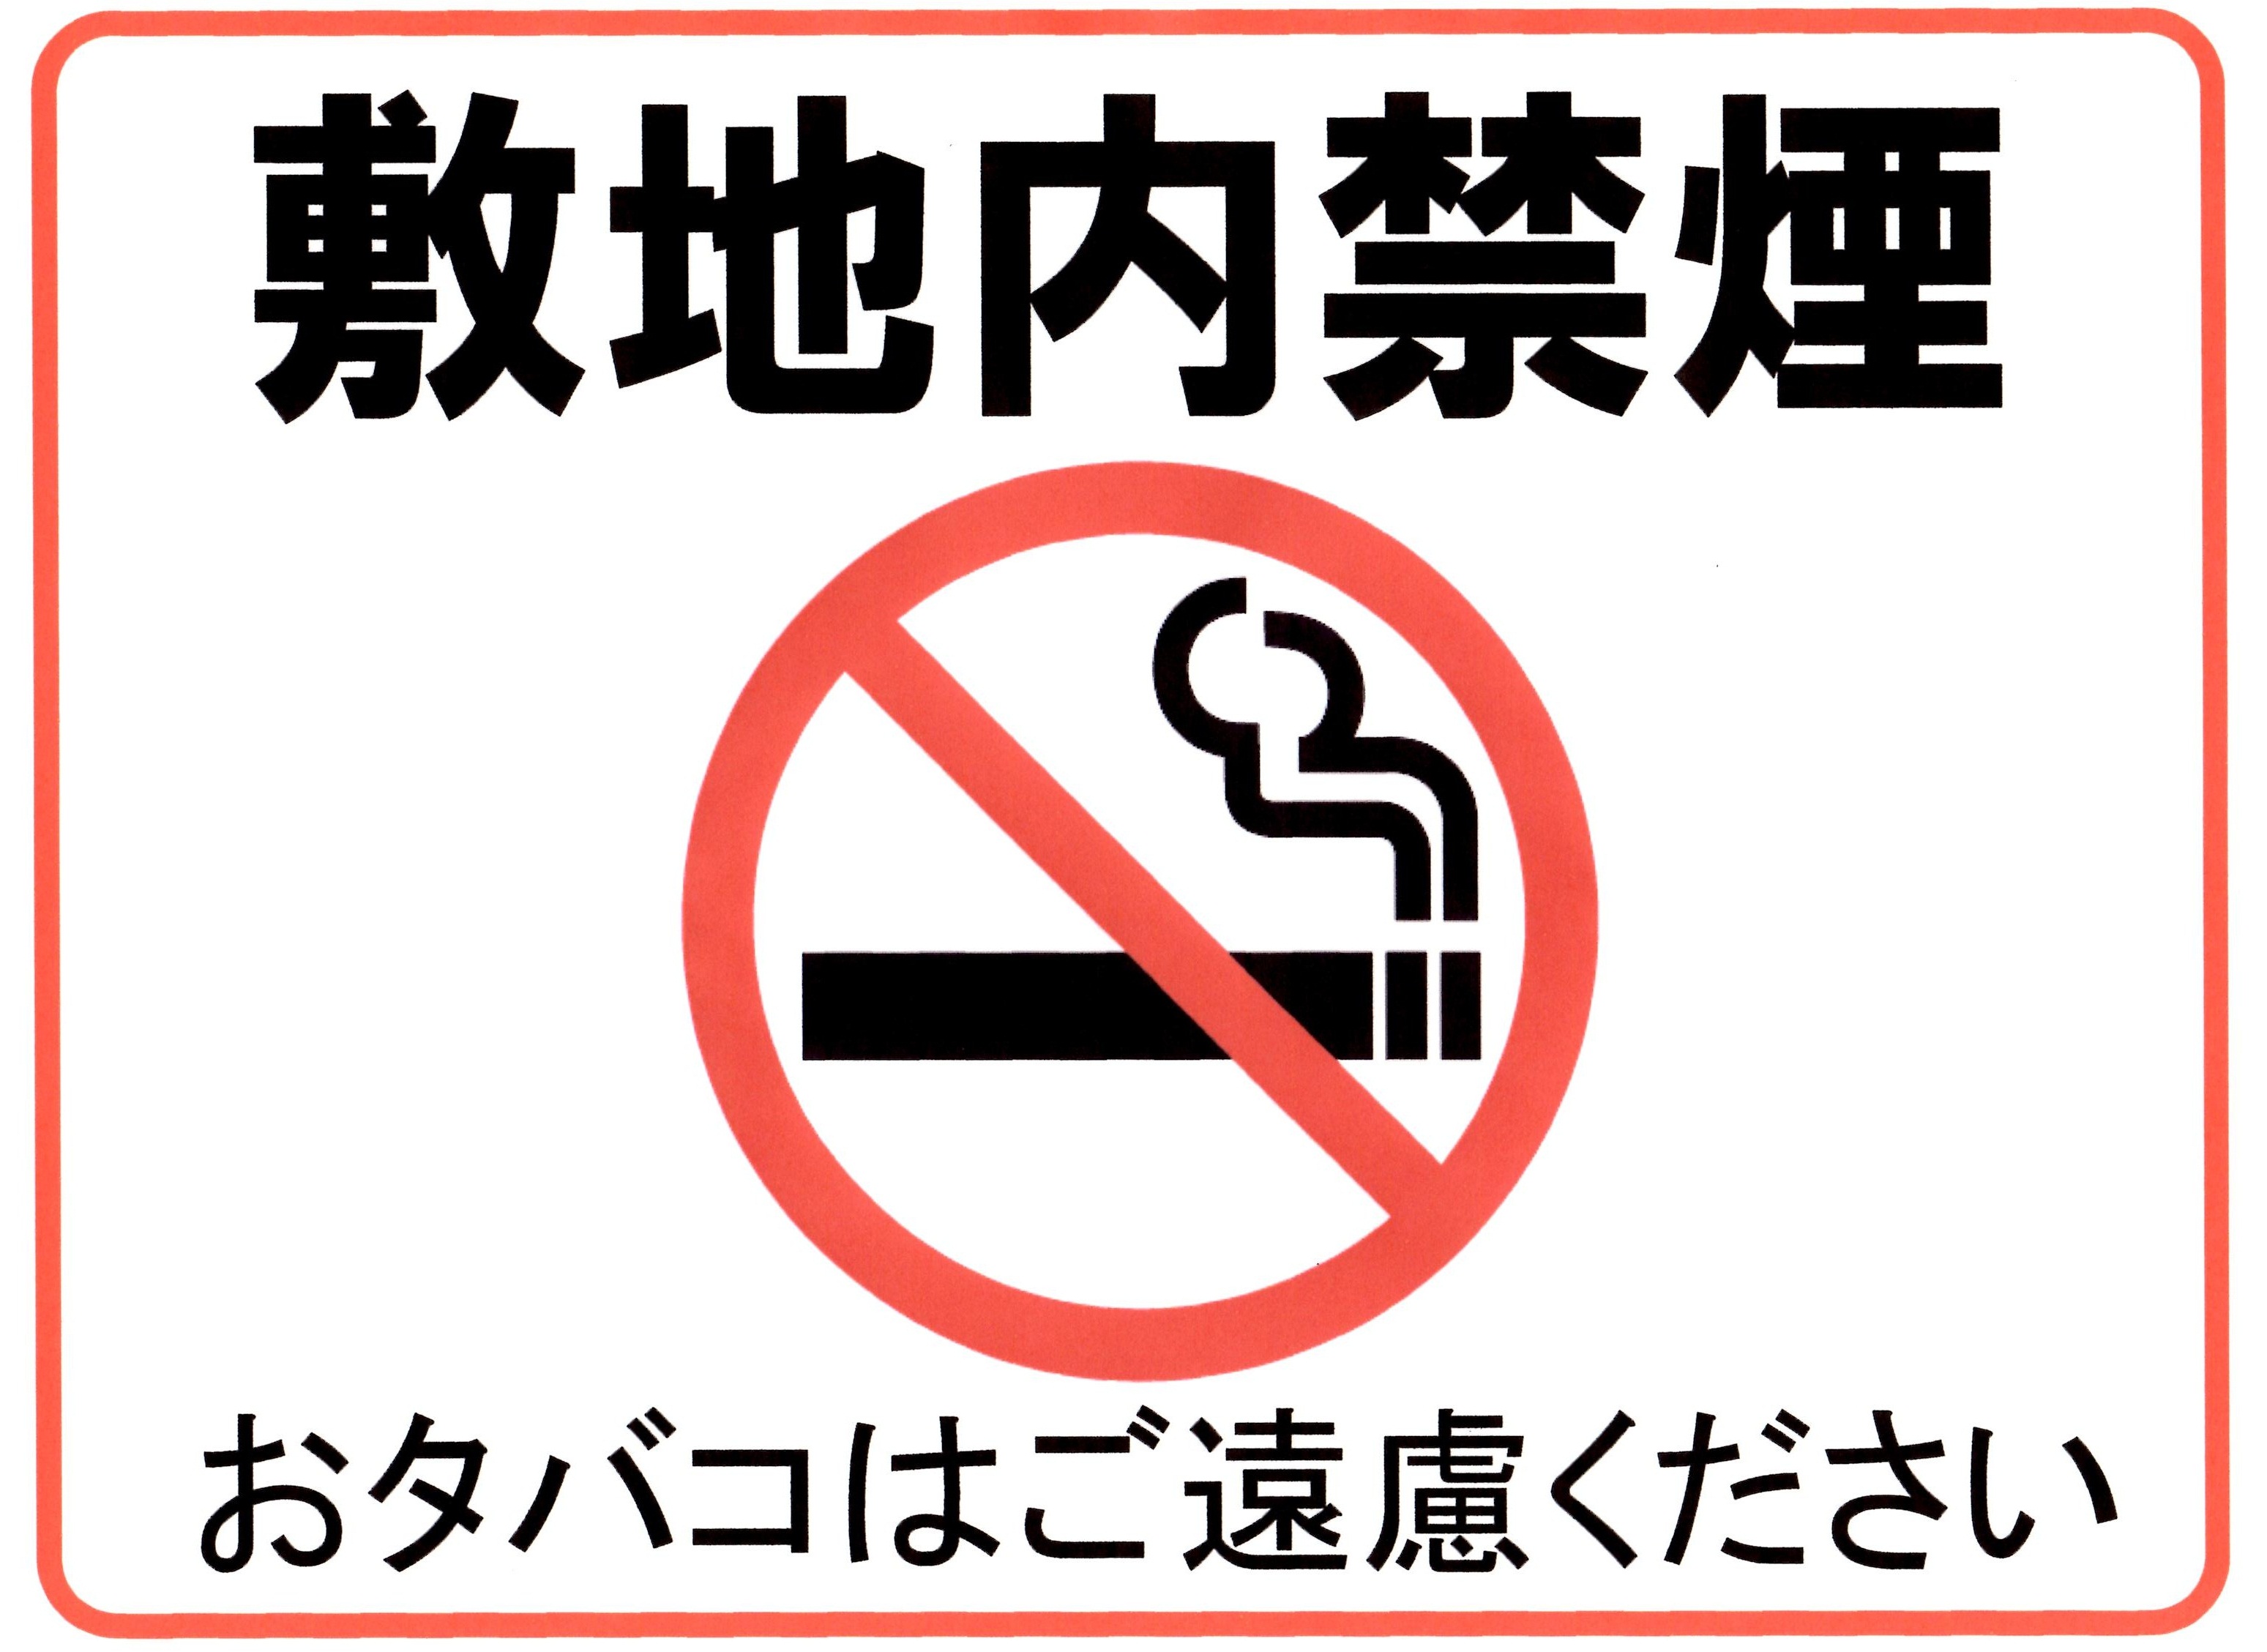 17年1月30日 敷地内禁煙のお願い お知らせ 医療法人 一陽会